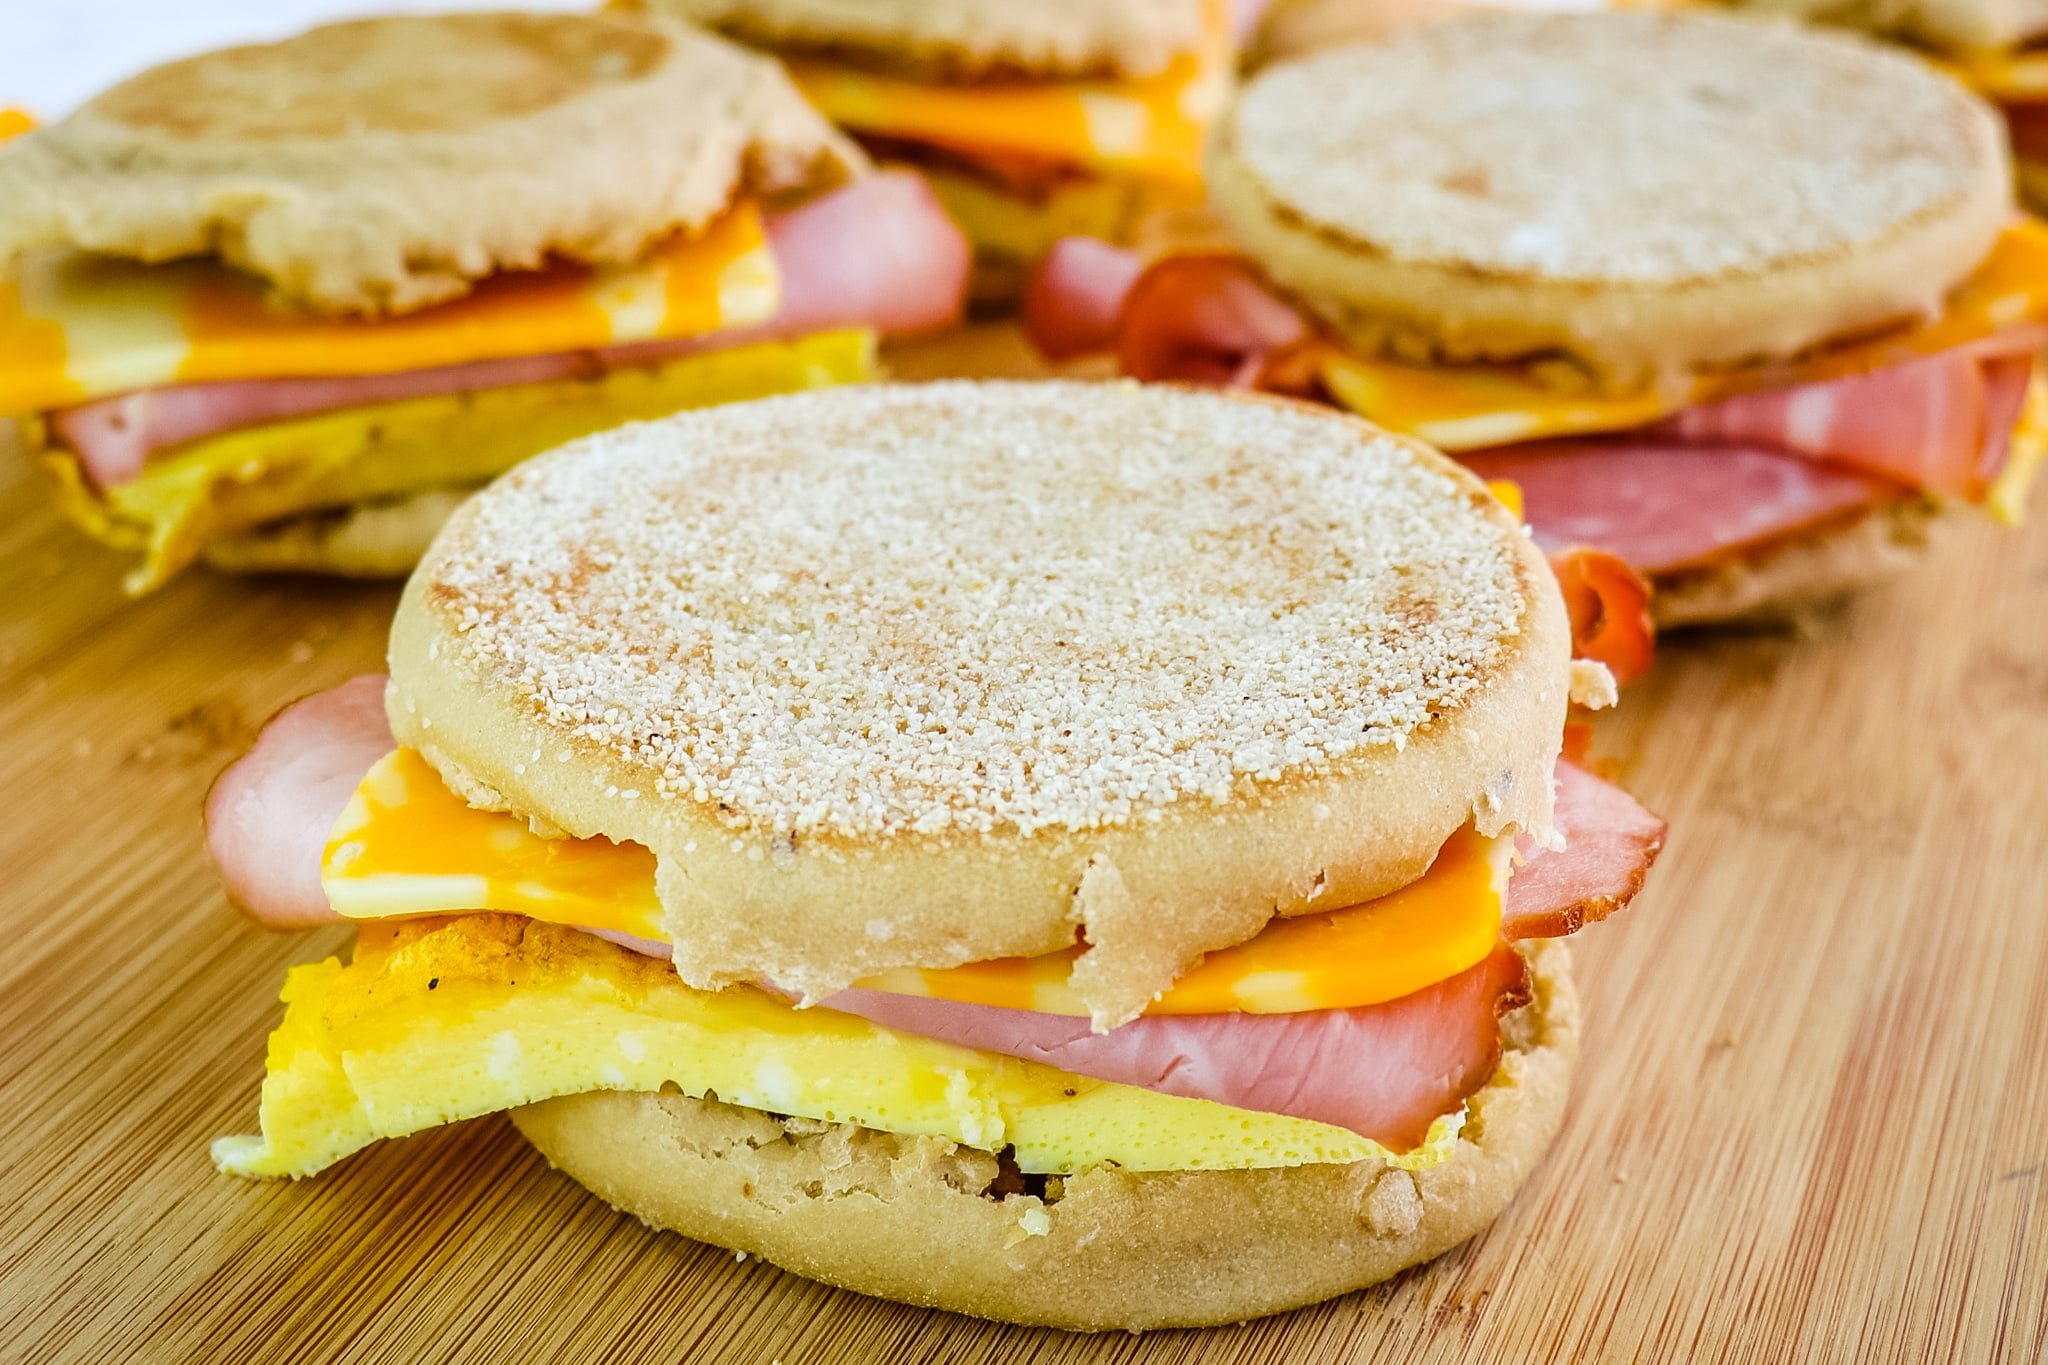 https://delightfulemade.com/wp-content/uploads/2022/08/Health-freezer-breakfast-sandwiches-hz.jpg